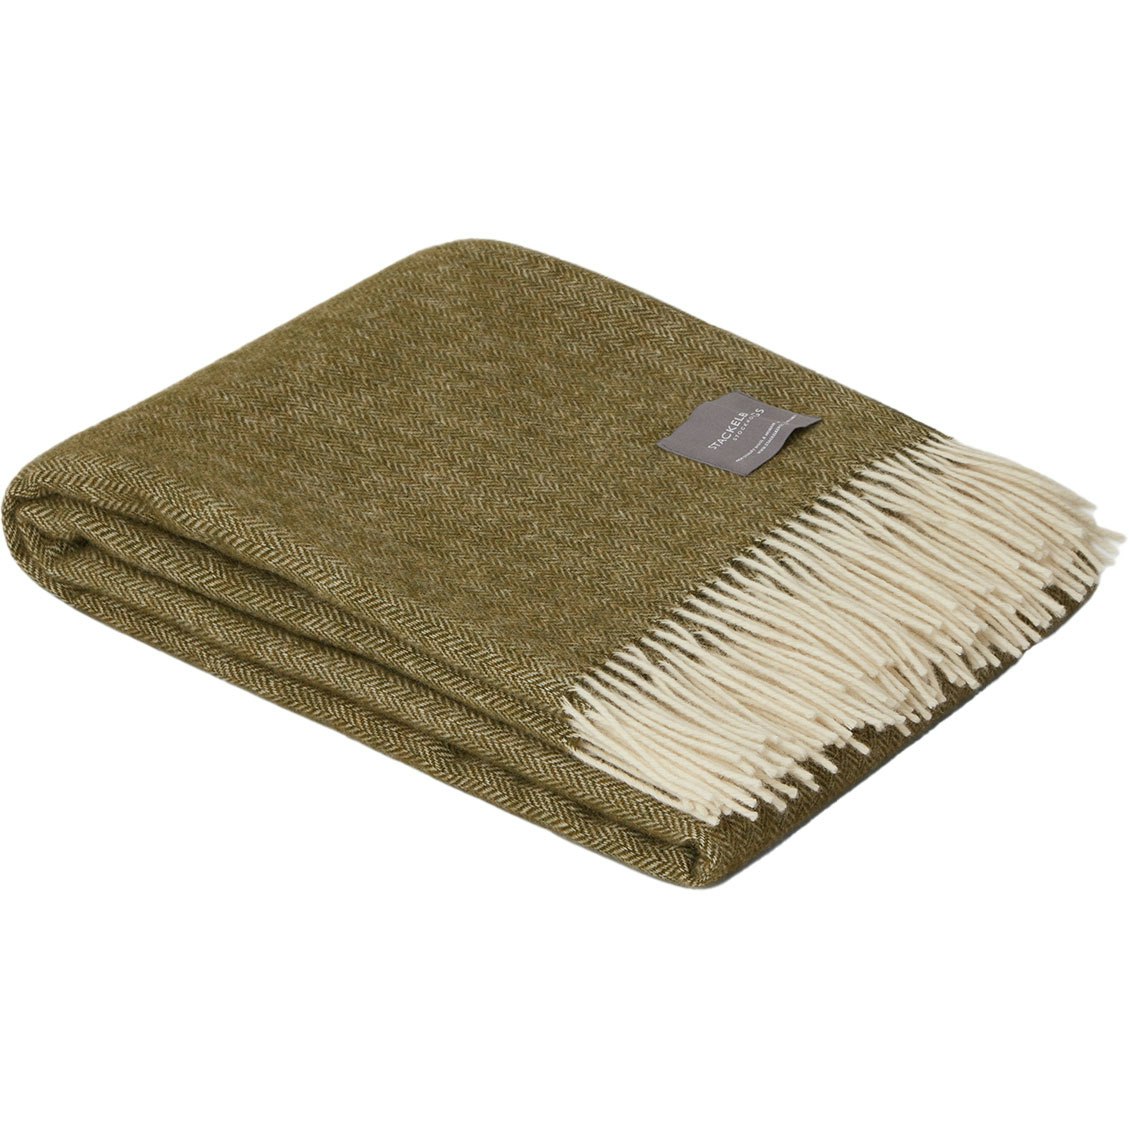 Wool Fishbone Blanket 130x170 cm, Olive/Off-white